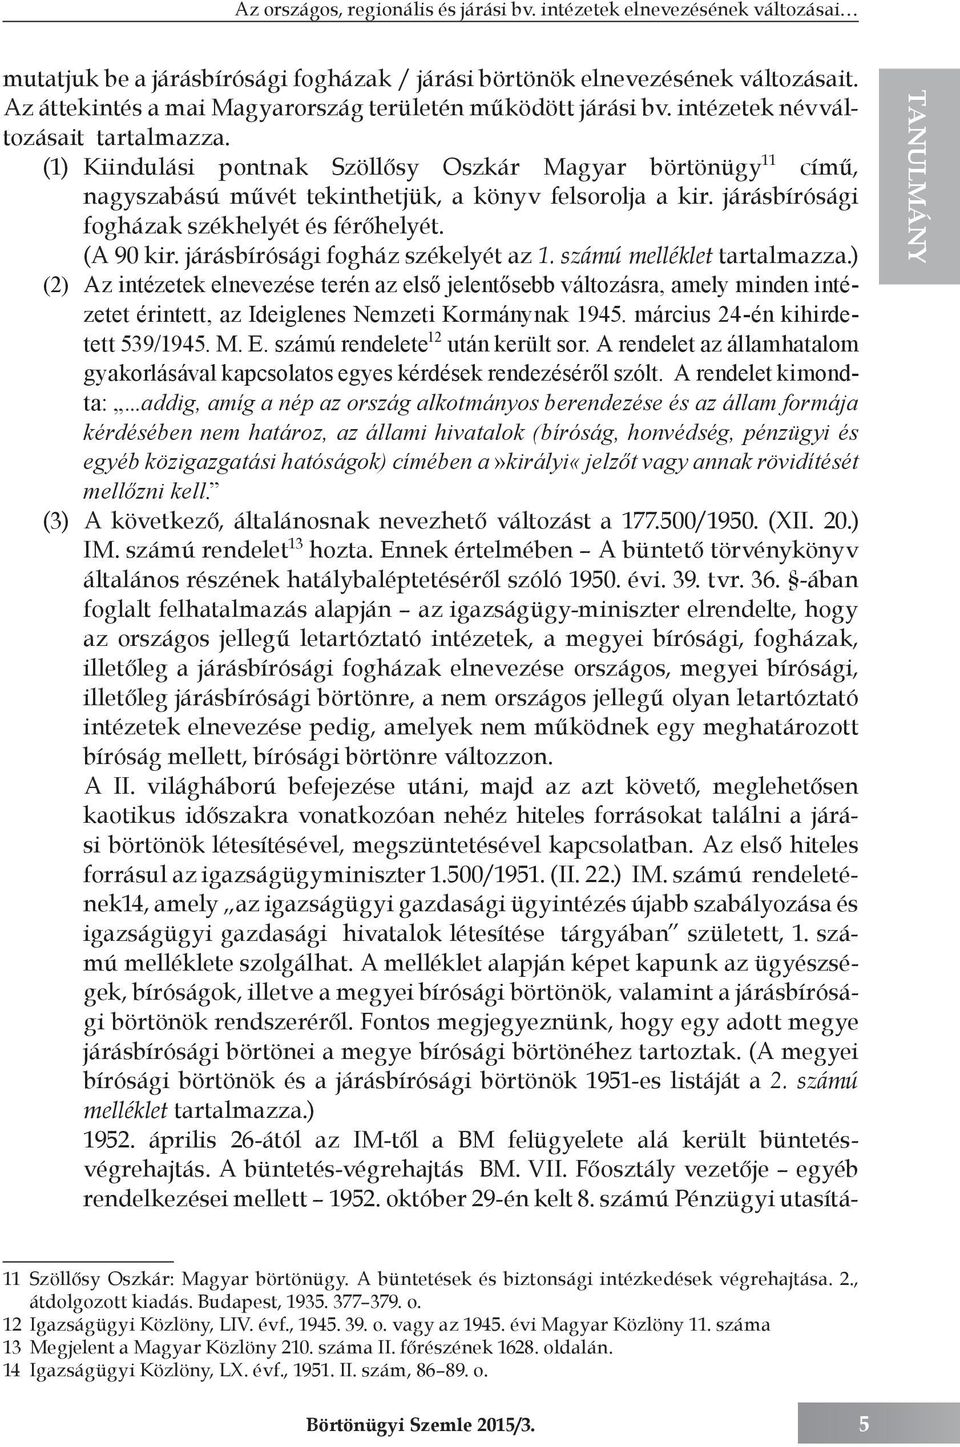 (1) Kiindulási pontnak Szöllősy Oszkár Magyar börtönügy 11 című, nagyszabású művét tekinthetjük, a könyv felsorolja a kir. járásbírósági fogházak székhelyét és férőhelyét. (A 90 kir.